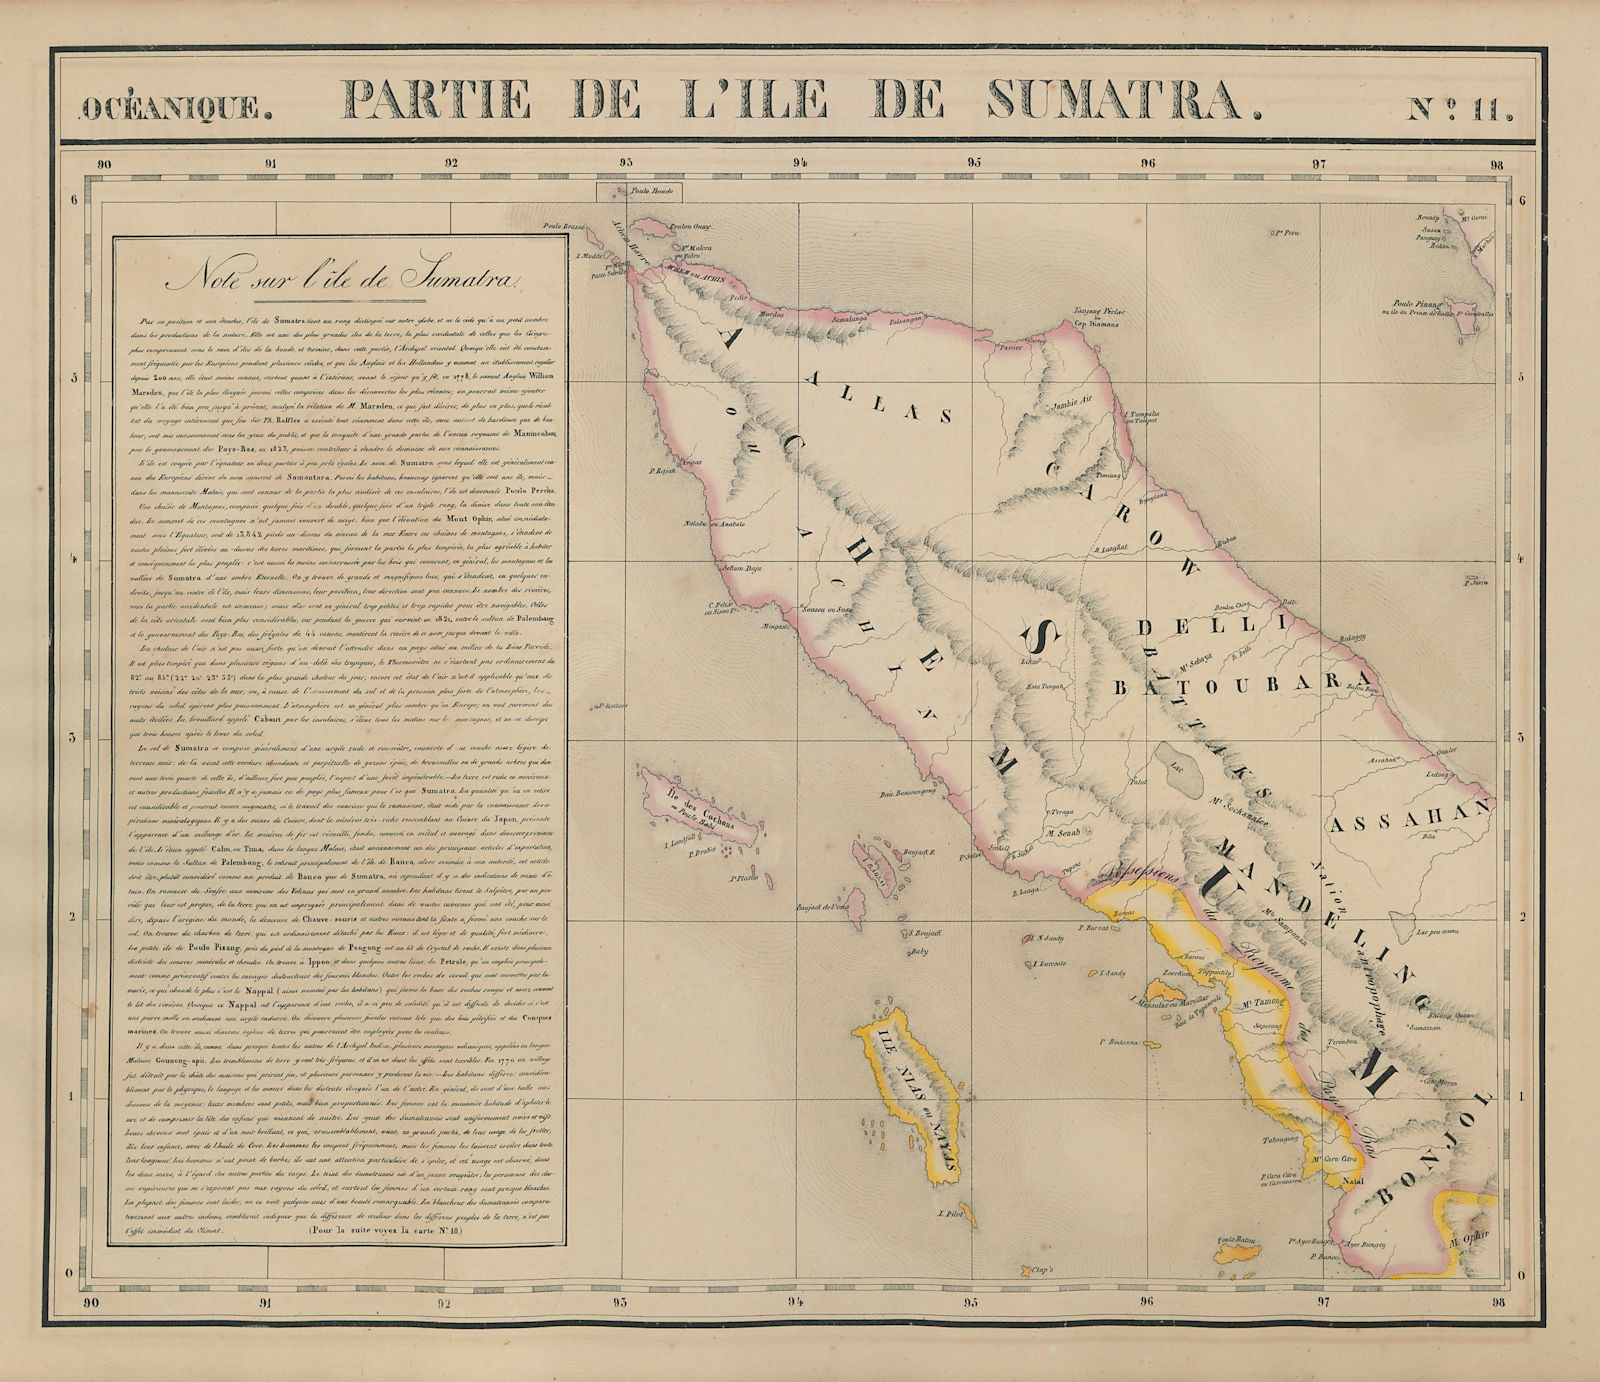 Océanique. Partie de l'Ile de Sumatra #11. North Sumatra. VANDERMAELEN 1827 map